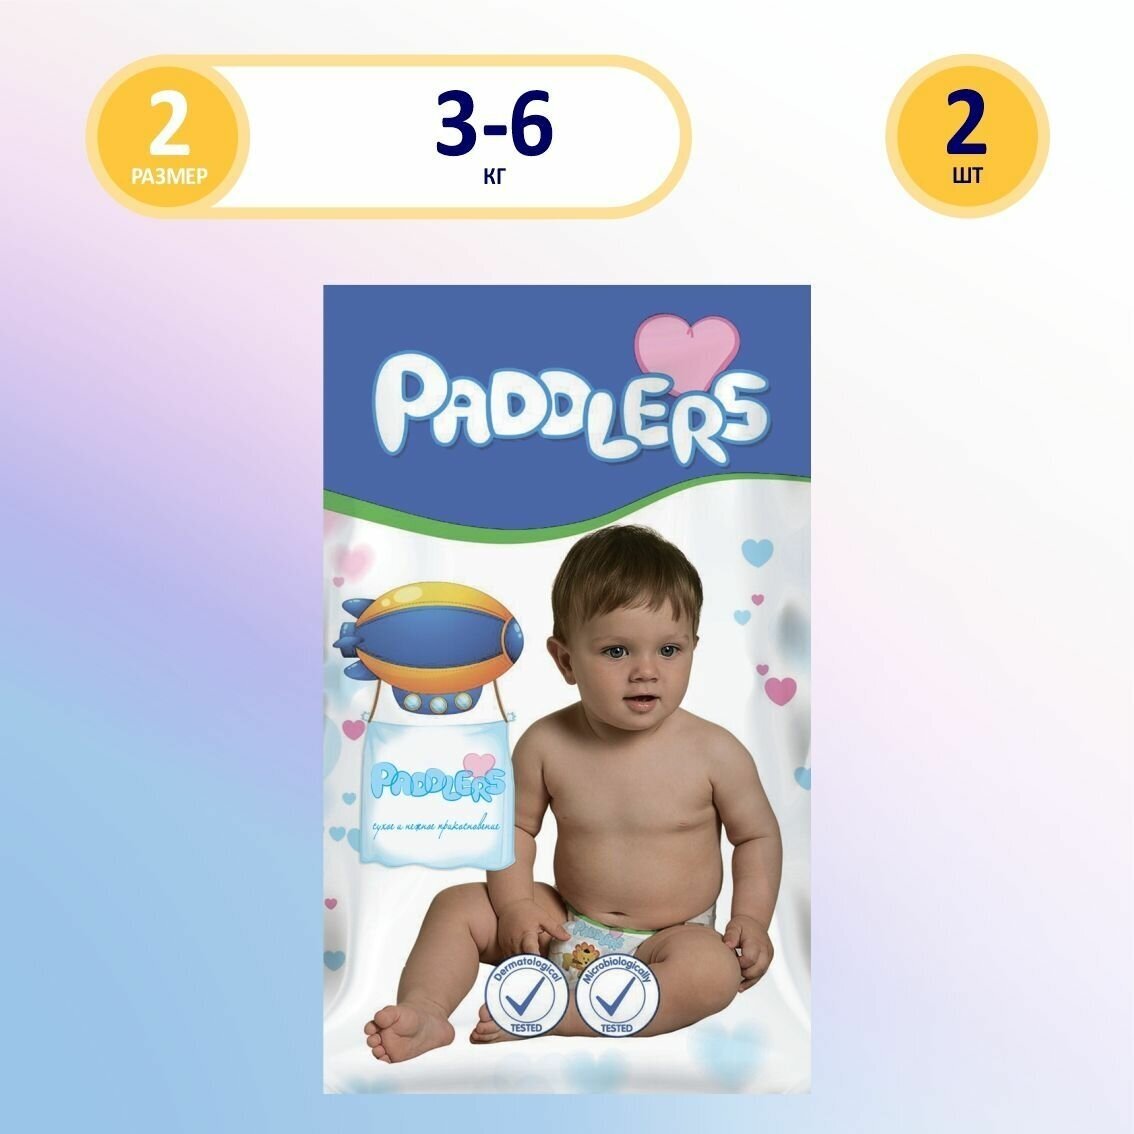 Подгузники Paddlers 2 размер для новорожденных детей 3-6 кг, 1 пачка в которой 2 подгузника с индикатором влаги